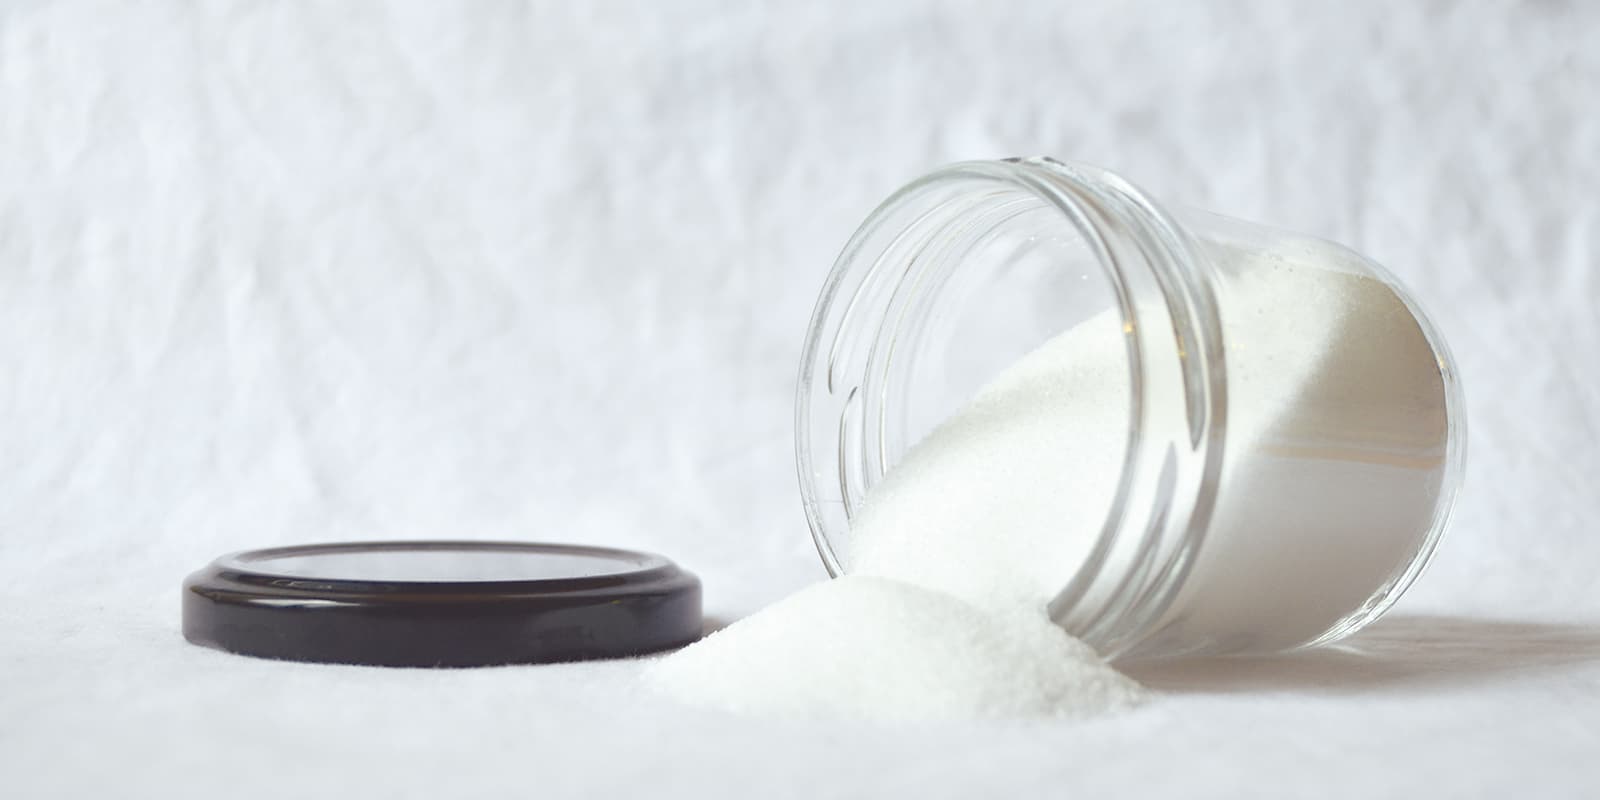 5 usos del ácido cítrico en la limpieza del hogar - Mimook